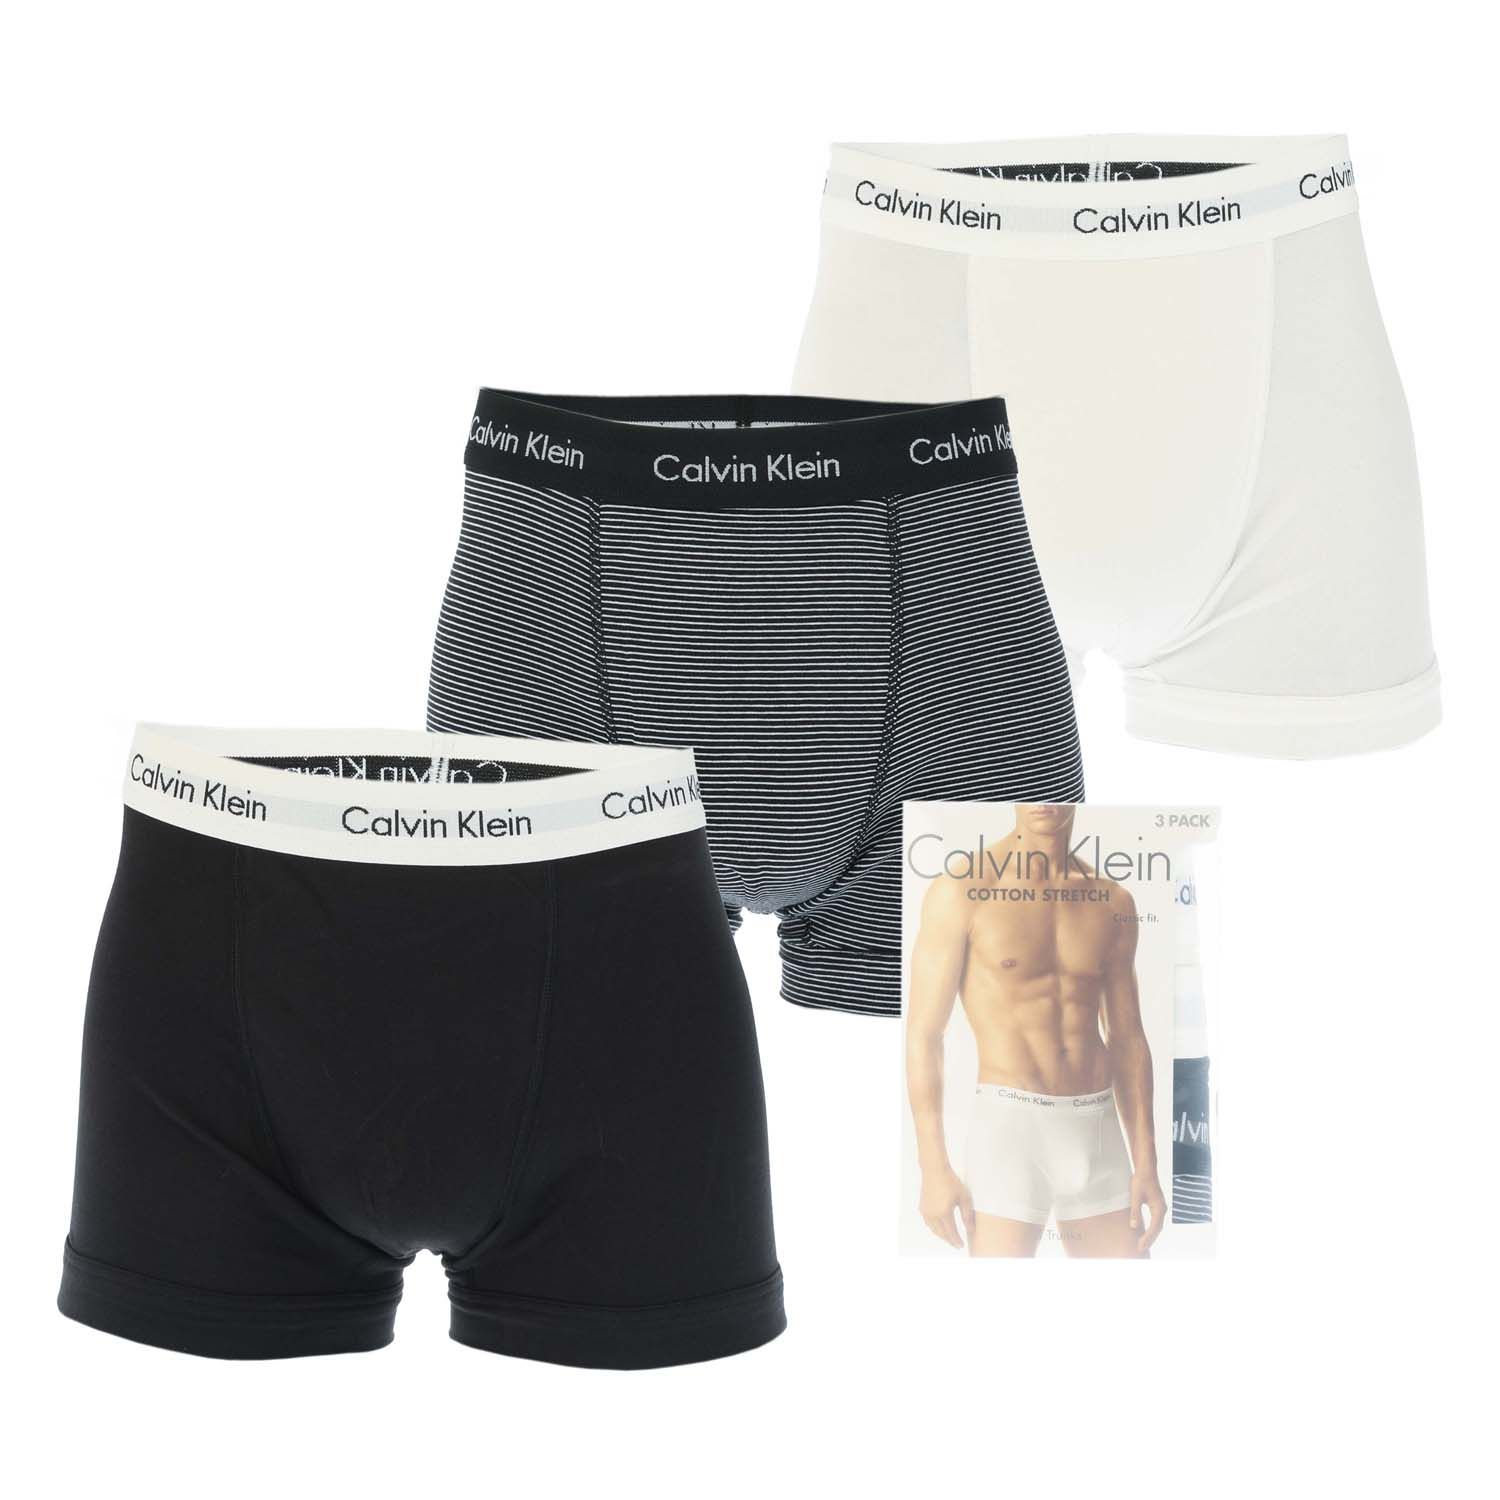 Calvin Klein Underwear 3 Pack Boxer Shorts Black